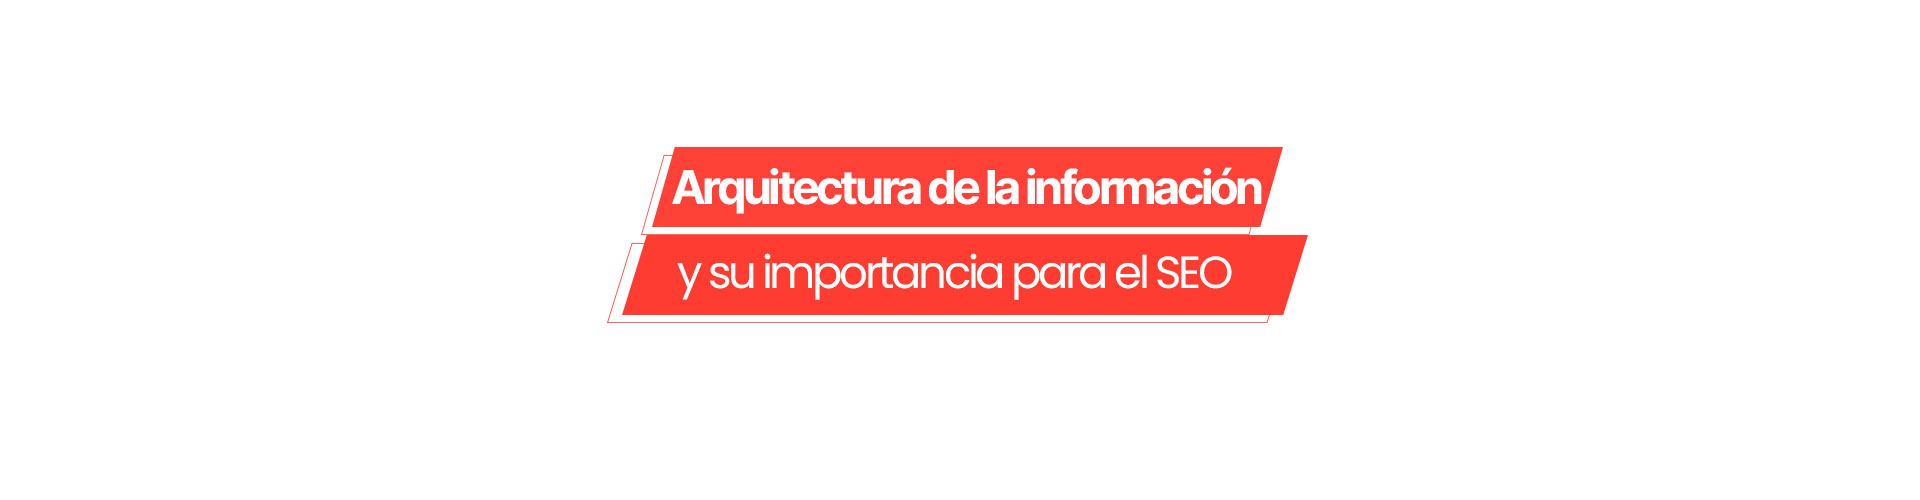 Arquitectura de la información para SEO: ¿por qué es tan importante?